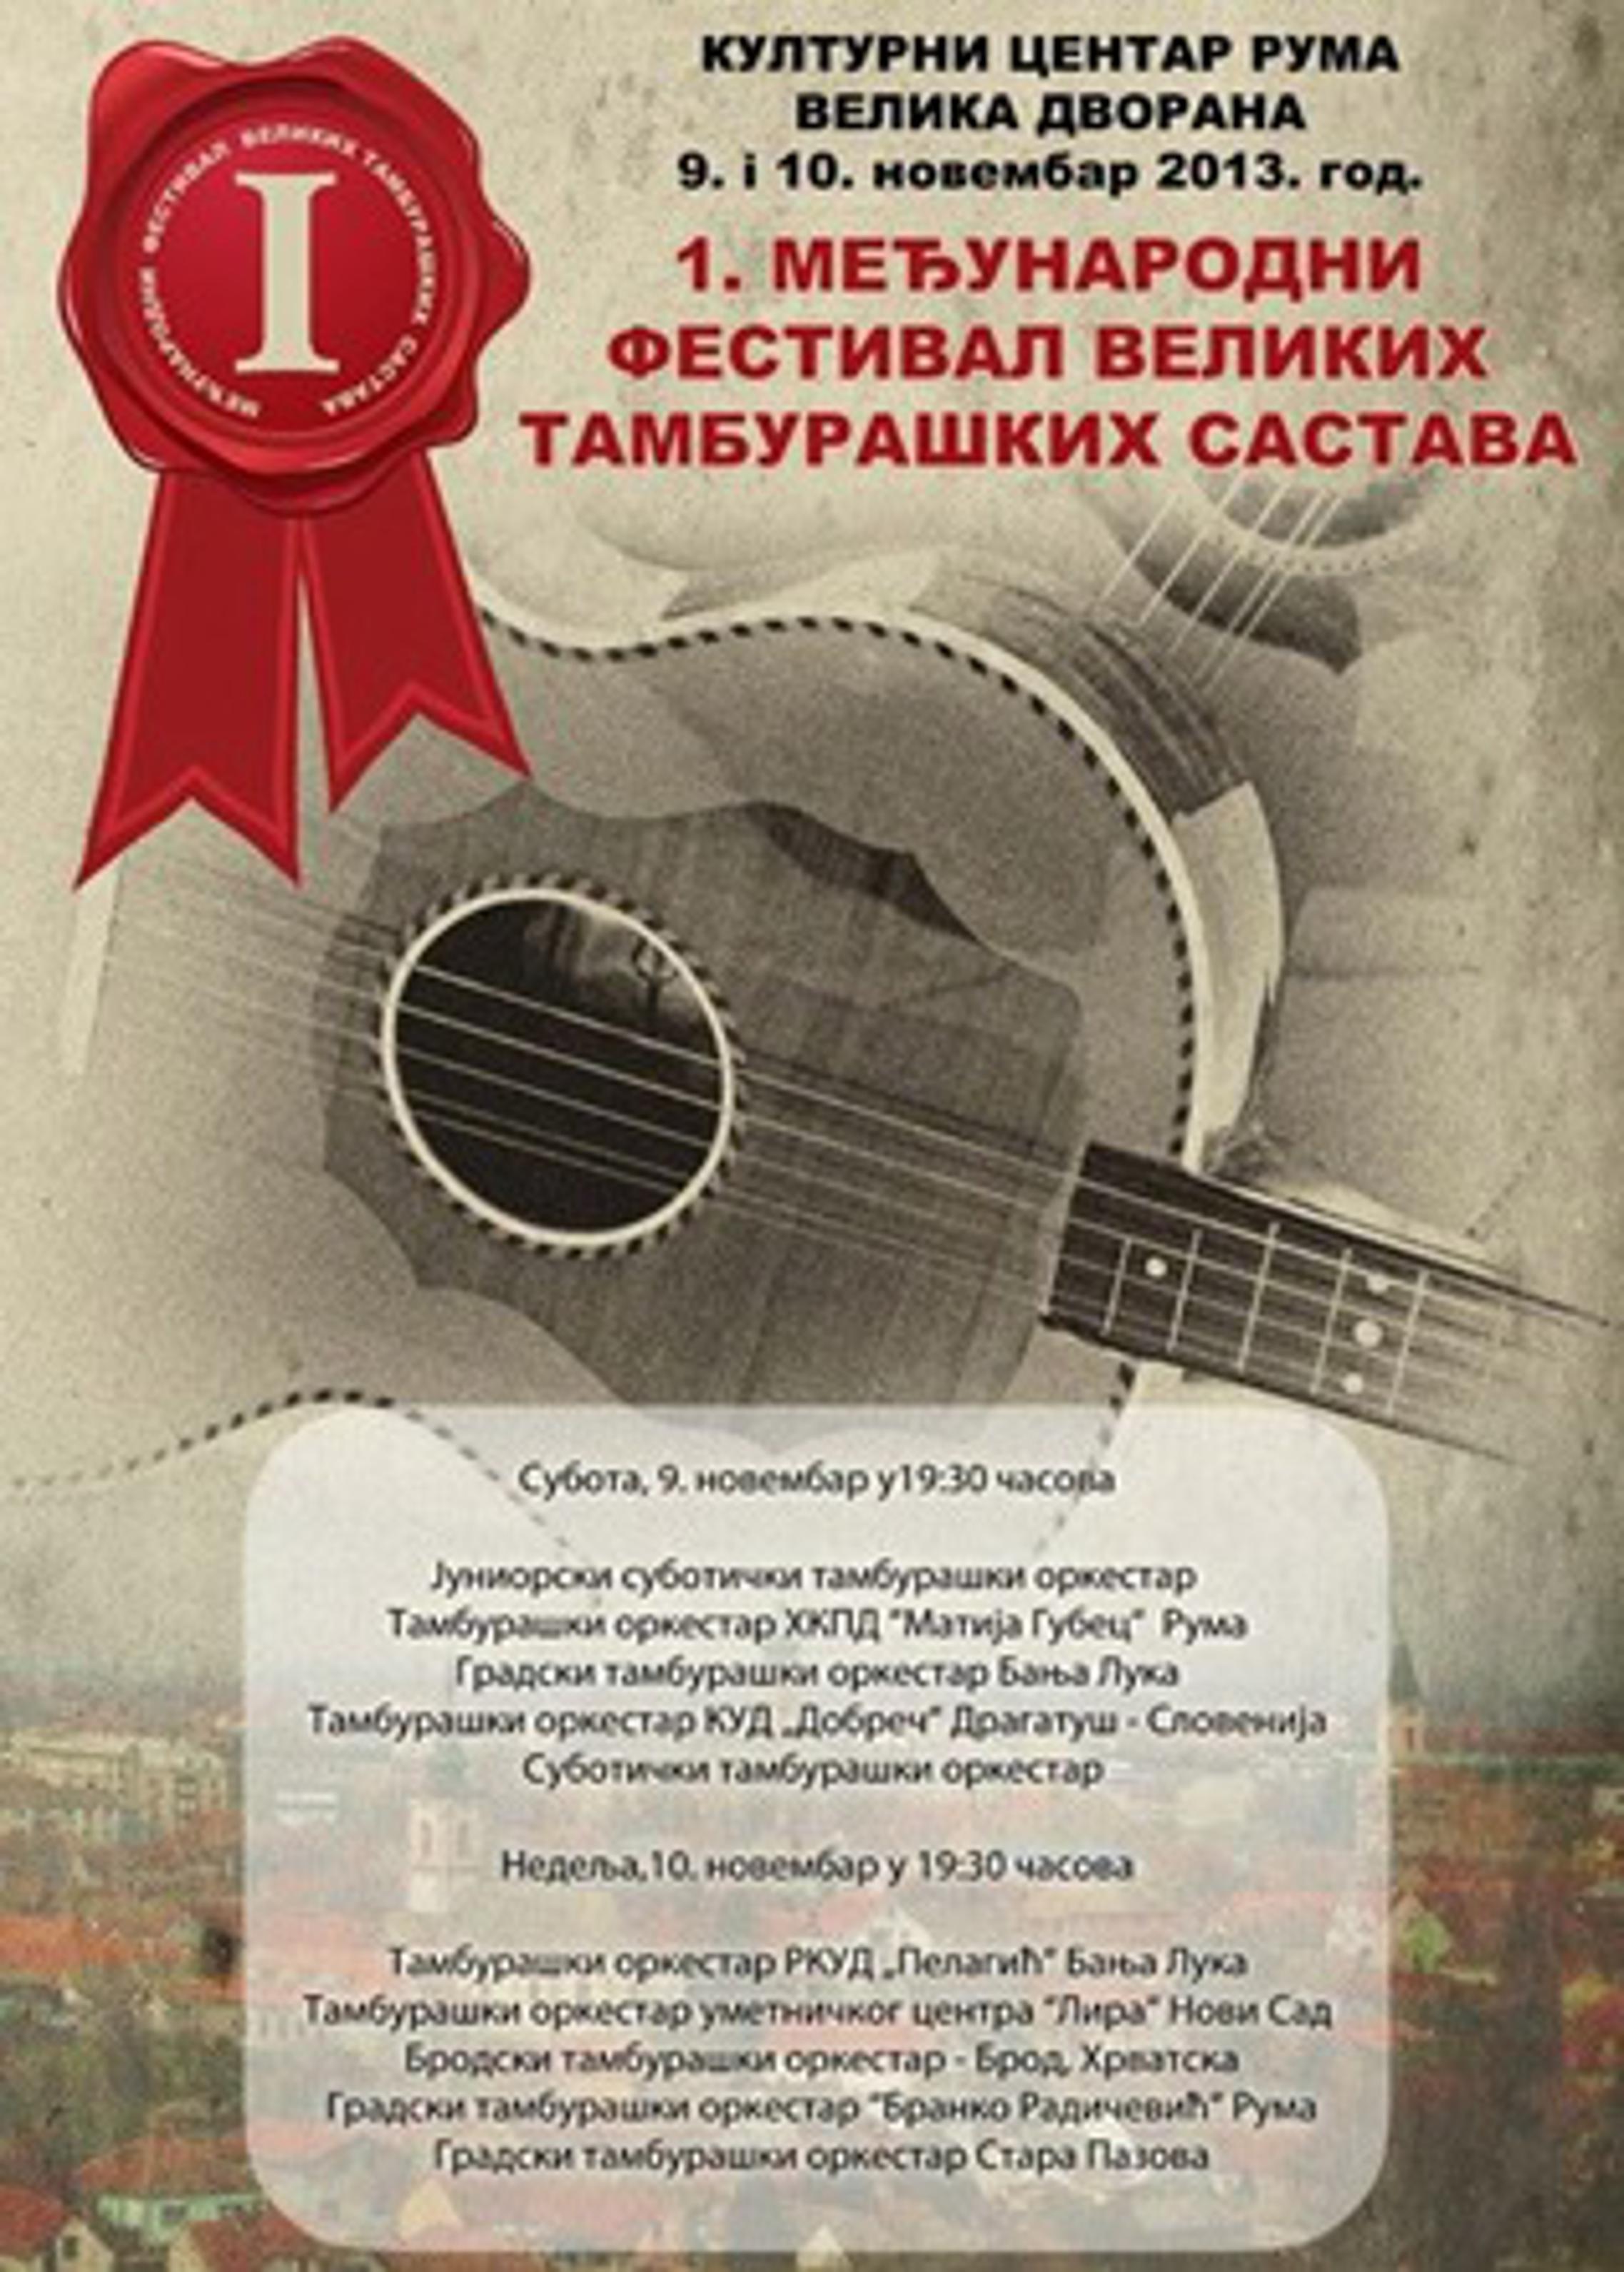 Plakat festivala